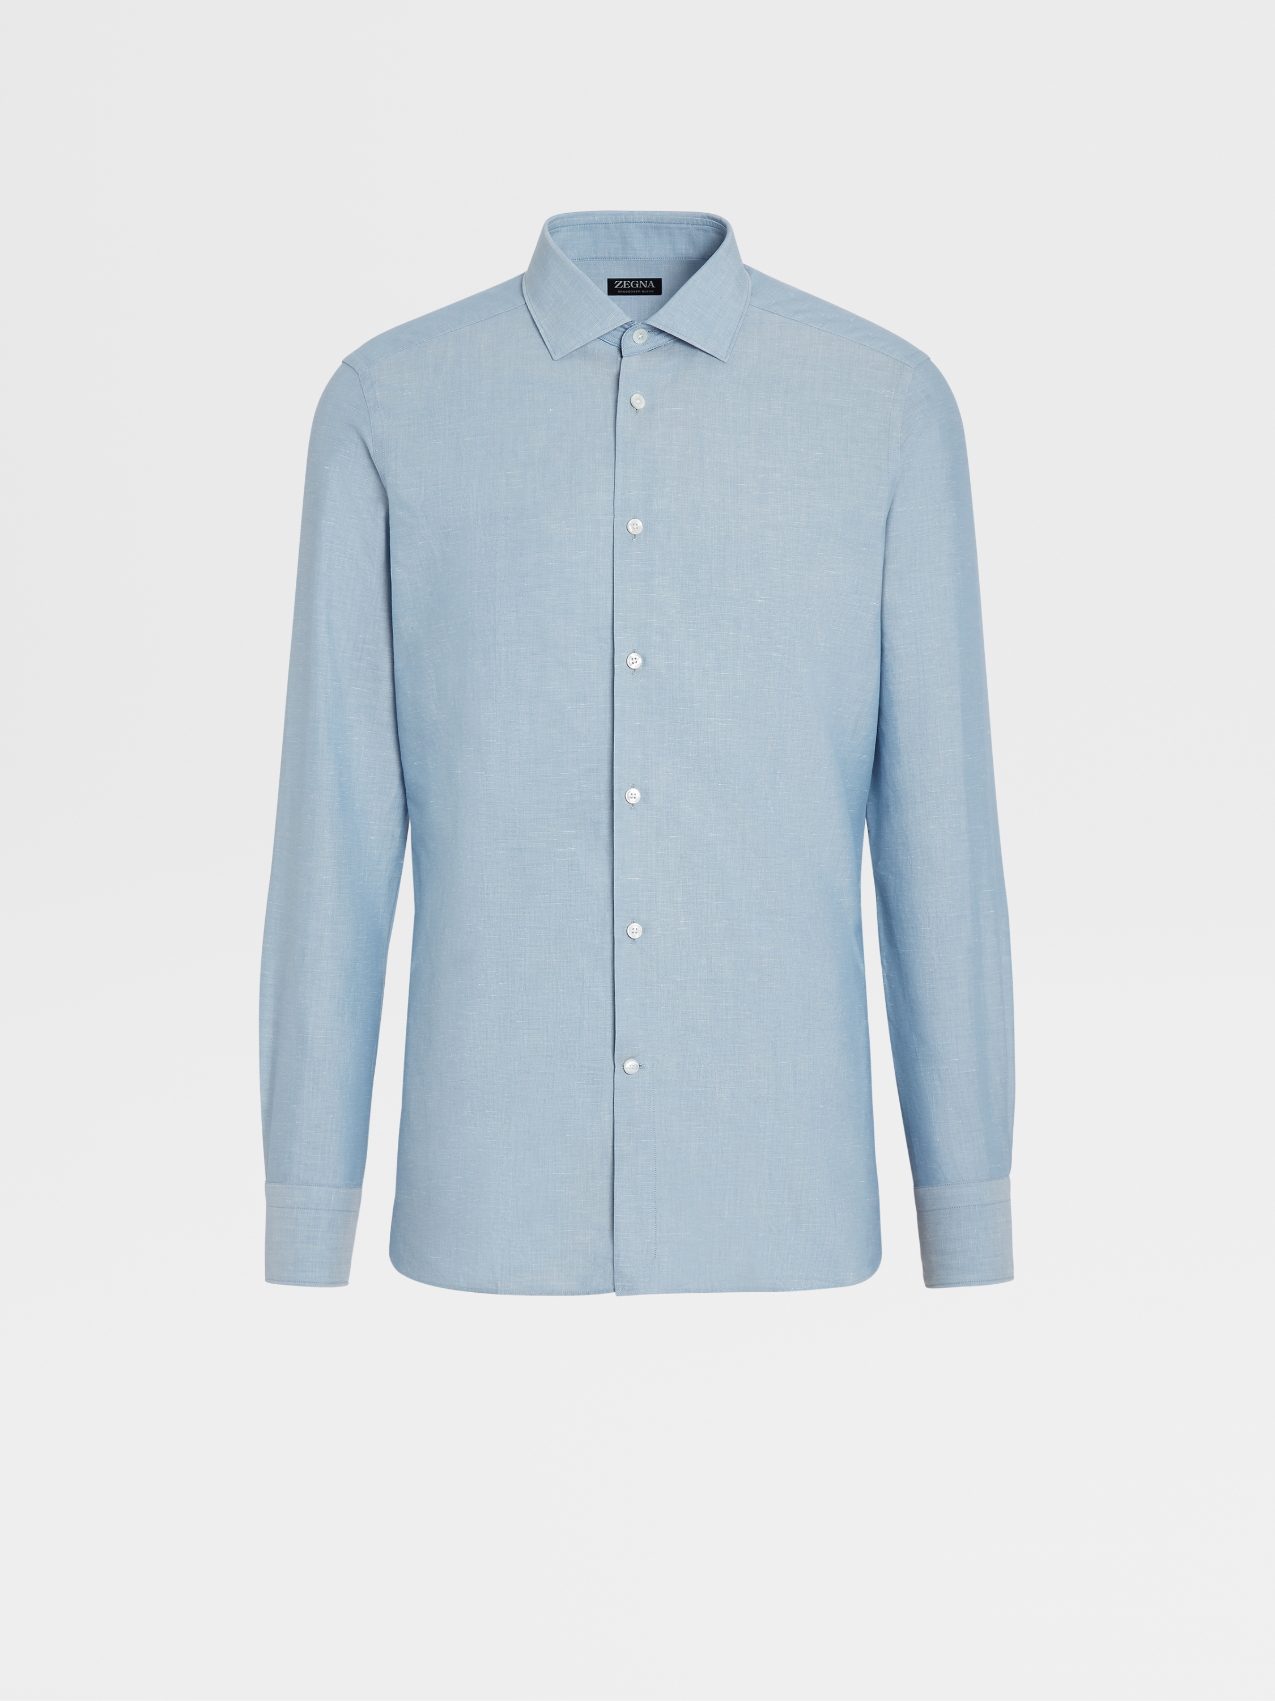 浅蓝色 Crossover 棉质亚麻及桑蚕丝混纺长袖精裁衬衫